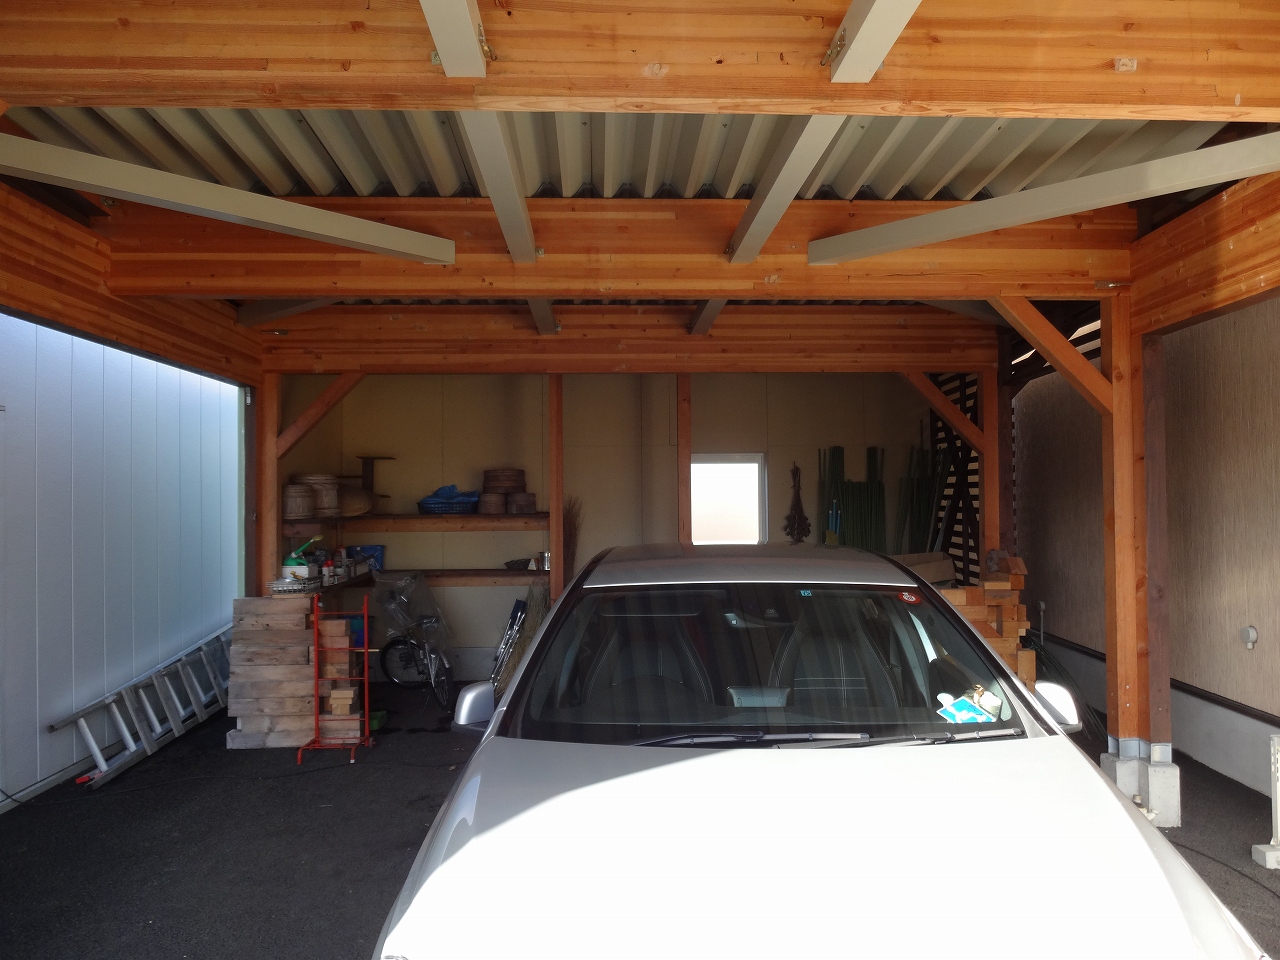 完成したガレージ内部です。工具を置く棚も造作。